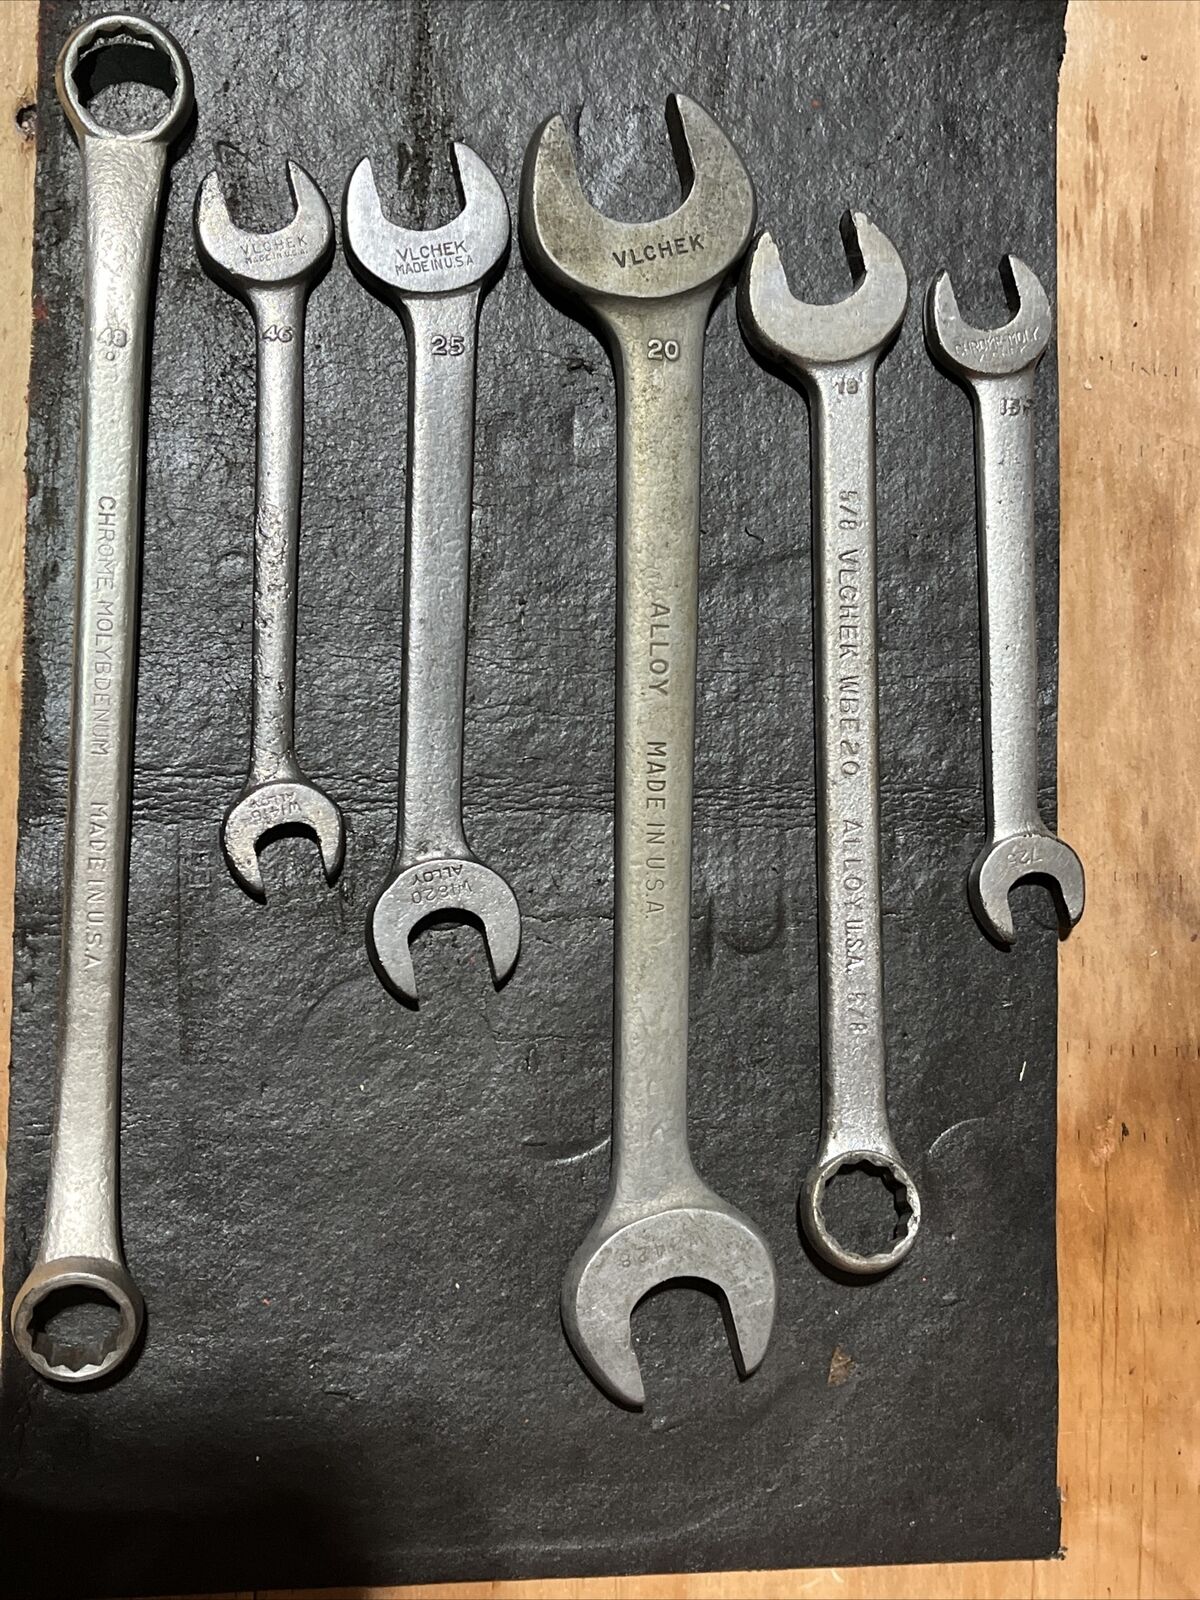 (6) vlchek wrenches- 15,18,20,25,46 & 48